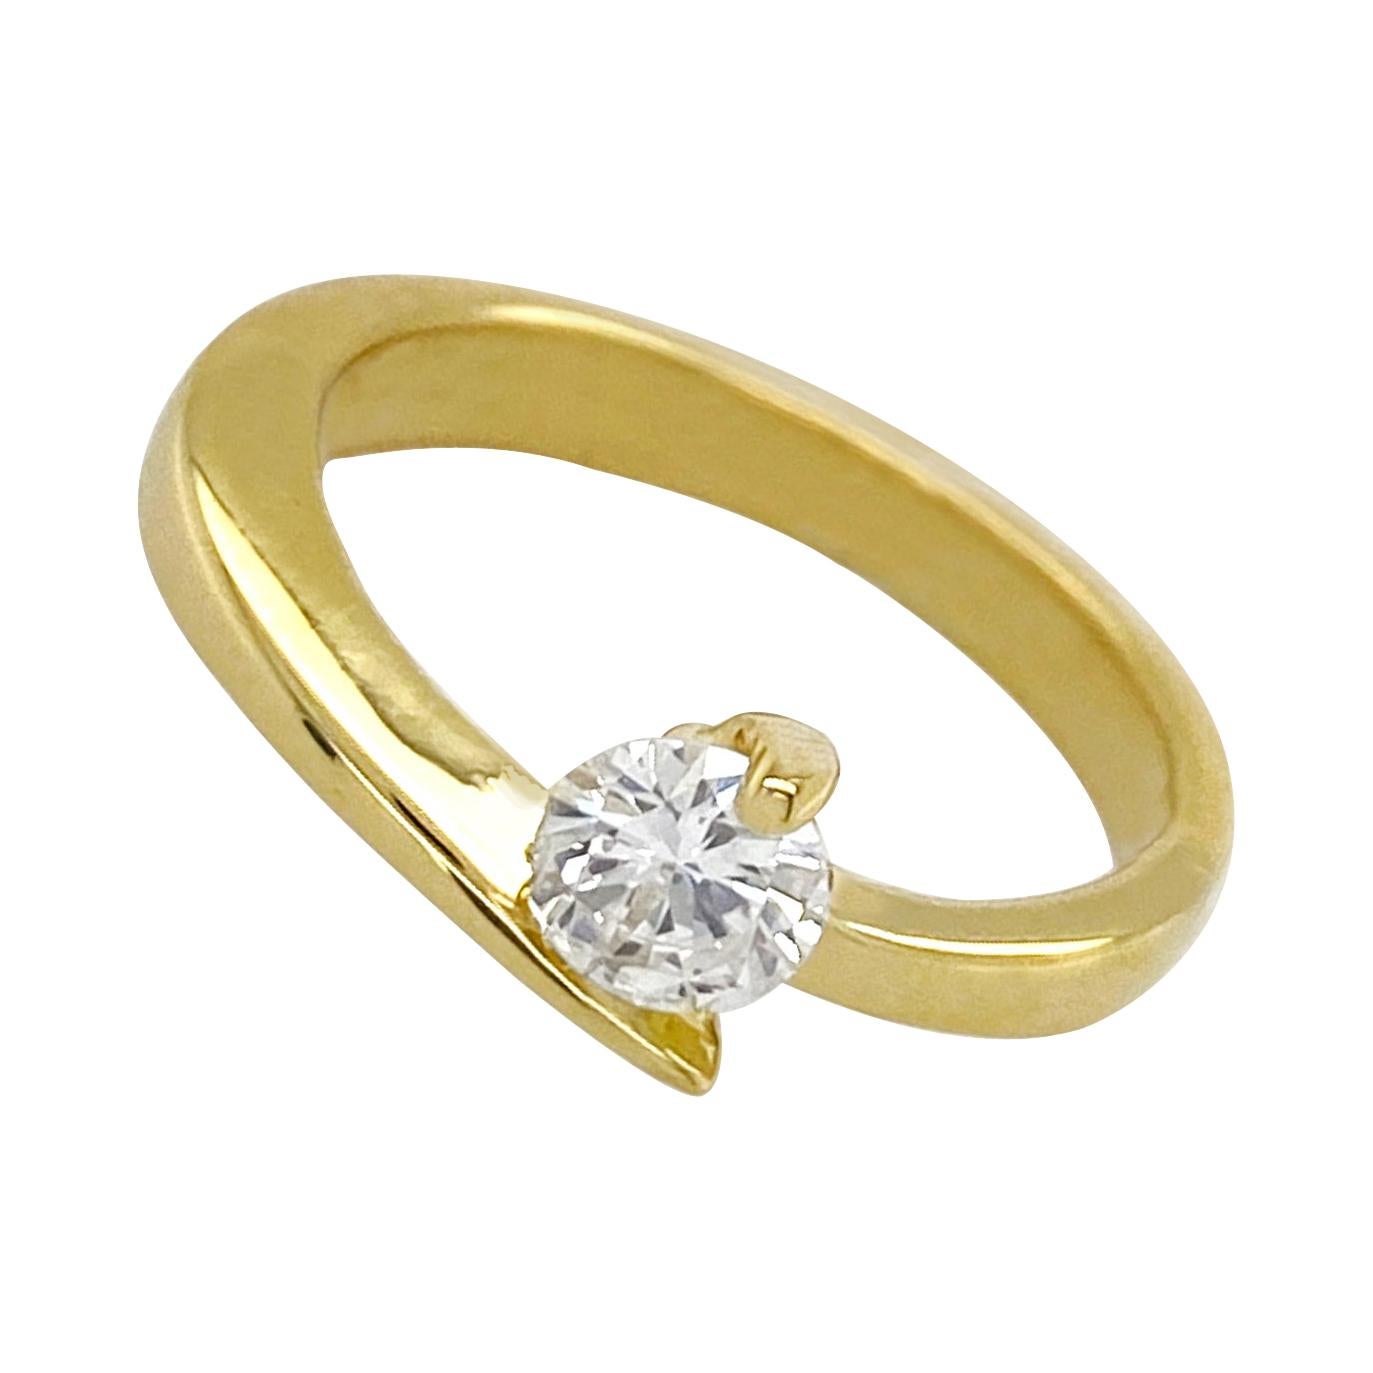 Certified 0.36 Carat Diamond Set in 18 Karat Yellow Gold "Comet" Solitaire Ring